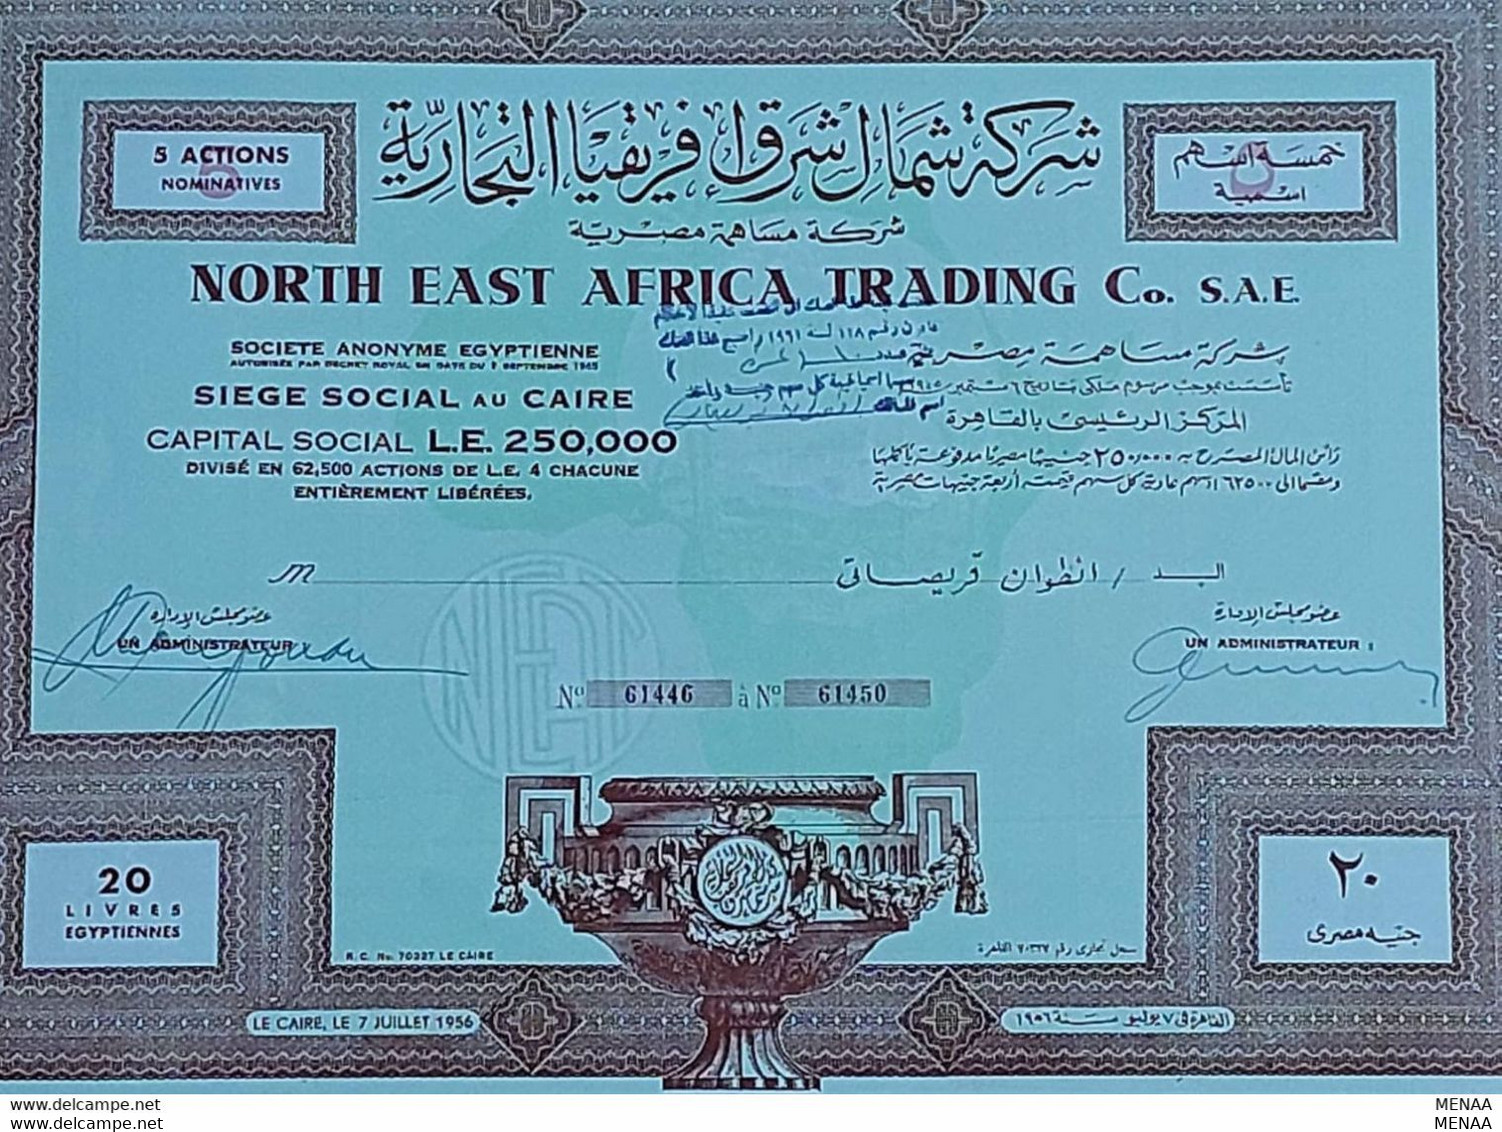 EGYPT-NORTH EAST AFRICA TRADING Co. - 5 Actions - 1945 - RARE(Egypte)(Egitto)(Ägypten)(Egipto)(Egypten)Africa - Afrique